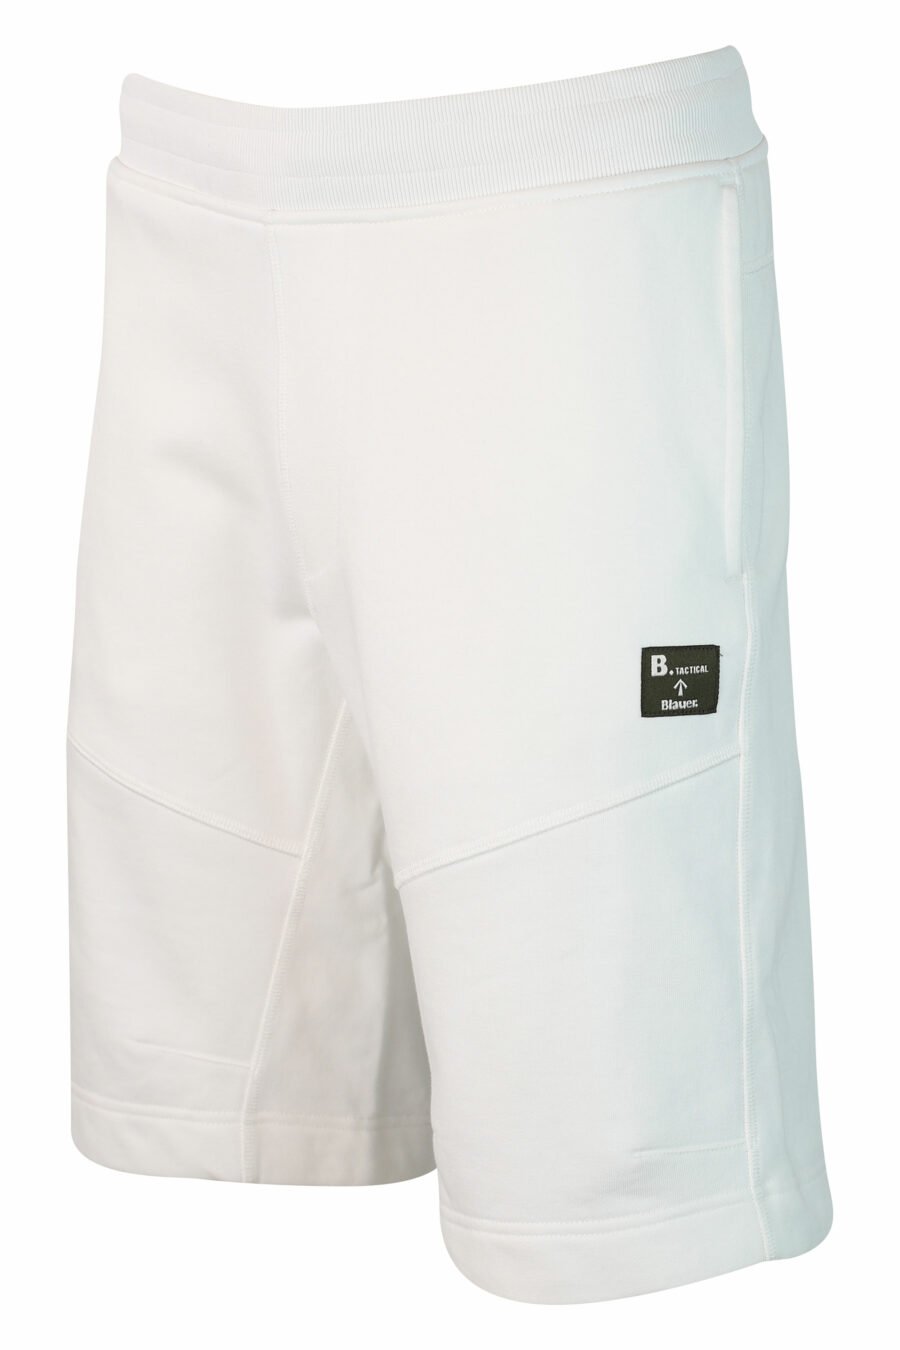 Pantalón de chándal corto blanco - IMG 9864